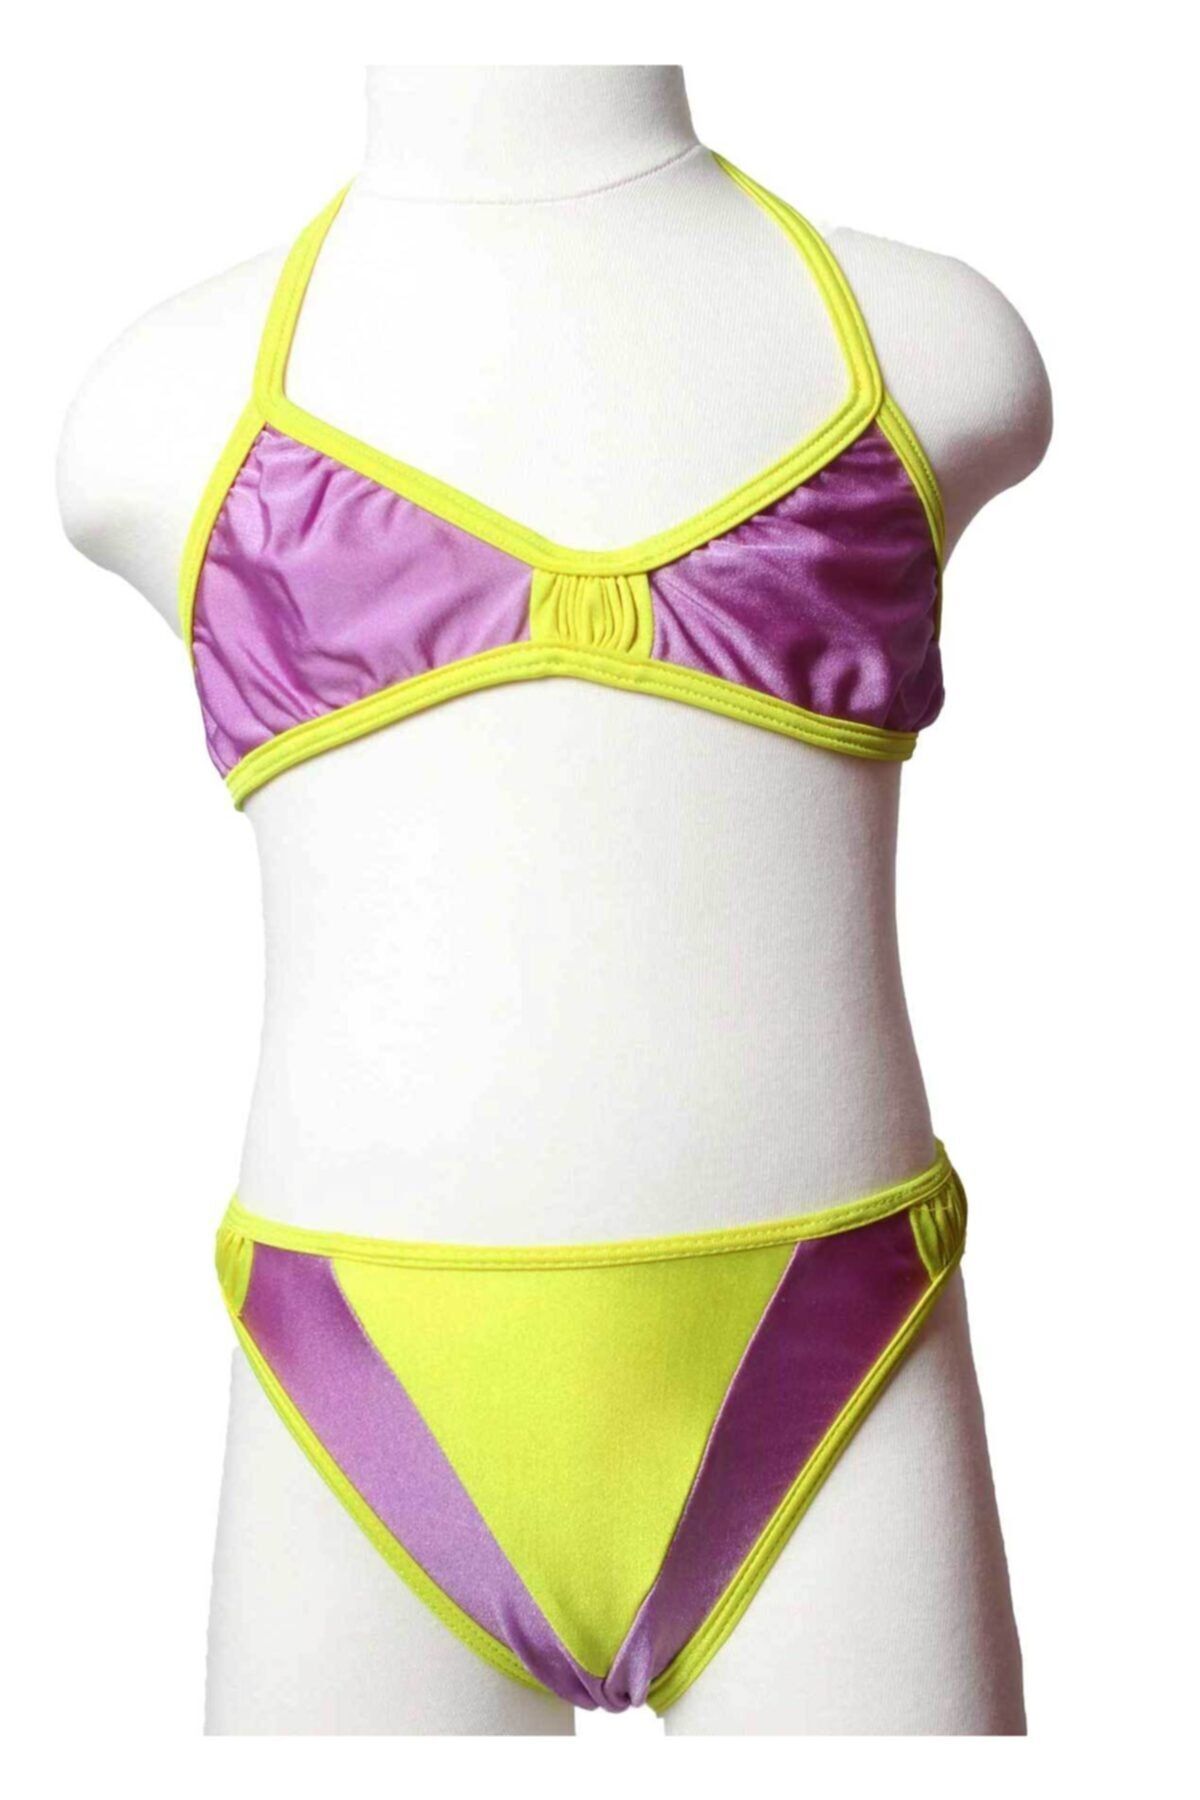 Sude Ayl Kız Çocuk Mor Üçgen Model Boyundan Bağlamalı Alt Üst Düz Bikini Takım 95